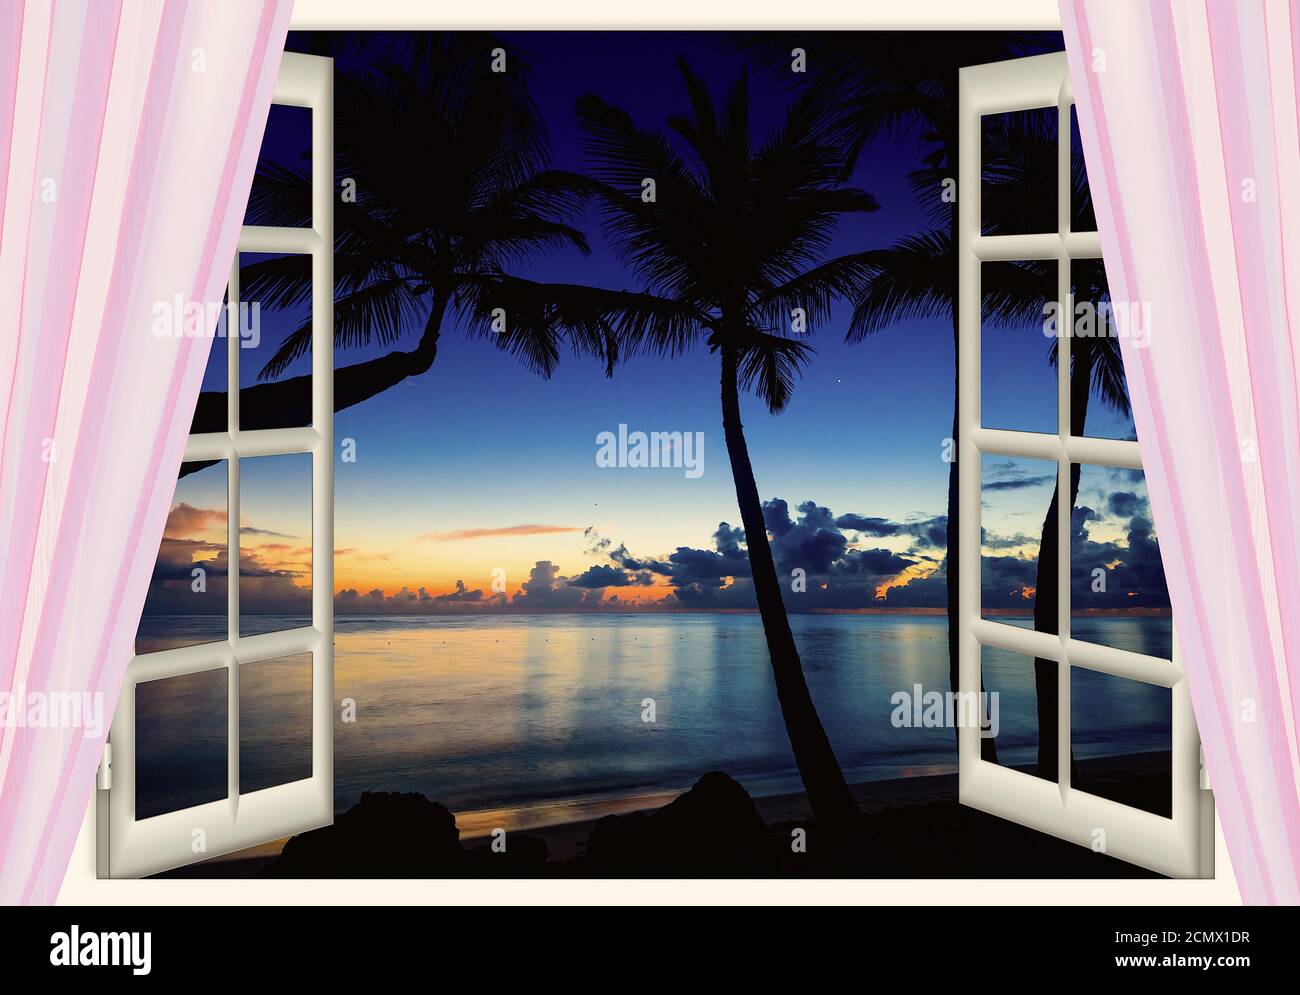 fenêtre ouverte avec vue sur la mer au coucher du soleil Banque D'Images